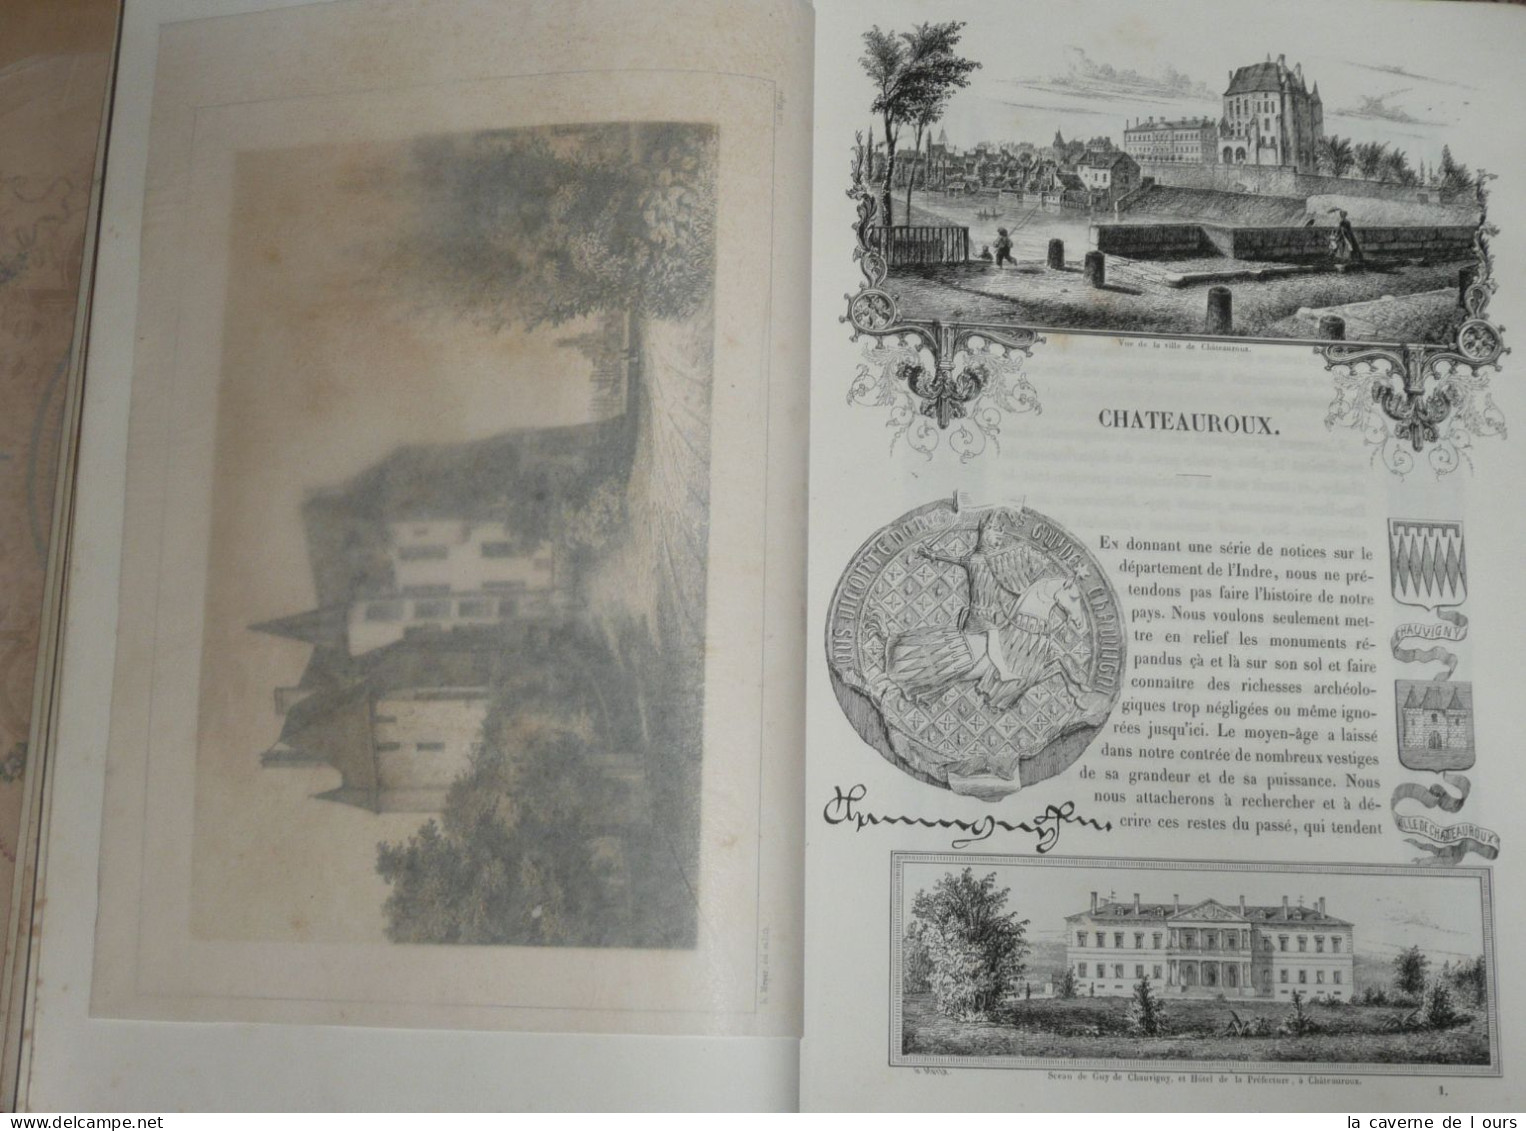 Rare livre illustré ancien, gravures, Esquisses Pittoresques, Indre 36, 1854